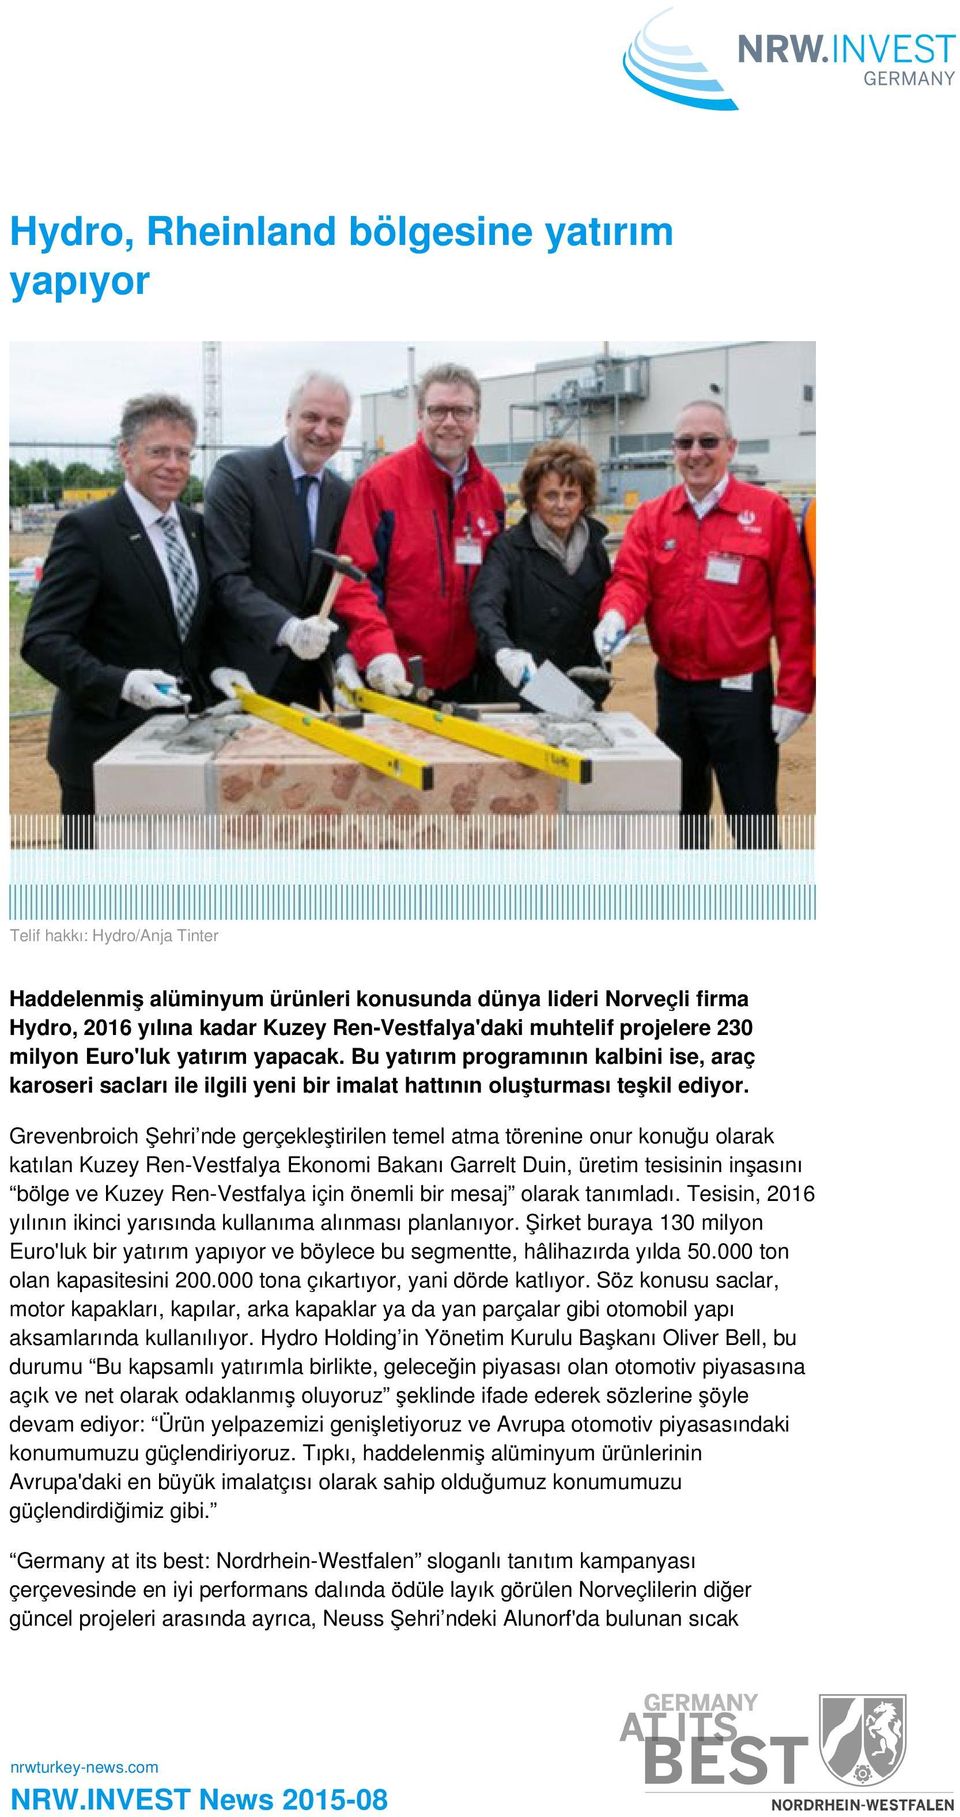 Grevenbroich Şehri nde gerçekleştirilen temel atma törenine onur konuğu olarak katılan Kuzey Ren-Vestfalya Ekonomi Bakanı Garrelt Duin, üretim tesisinin inşasını bölge ve Kuzey Ren-Vestfalya için